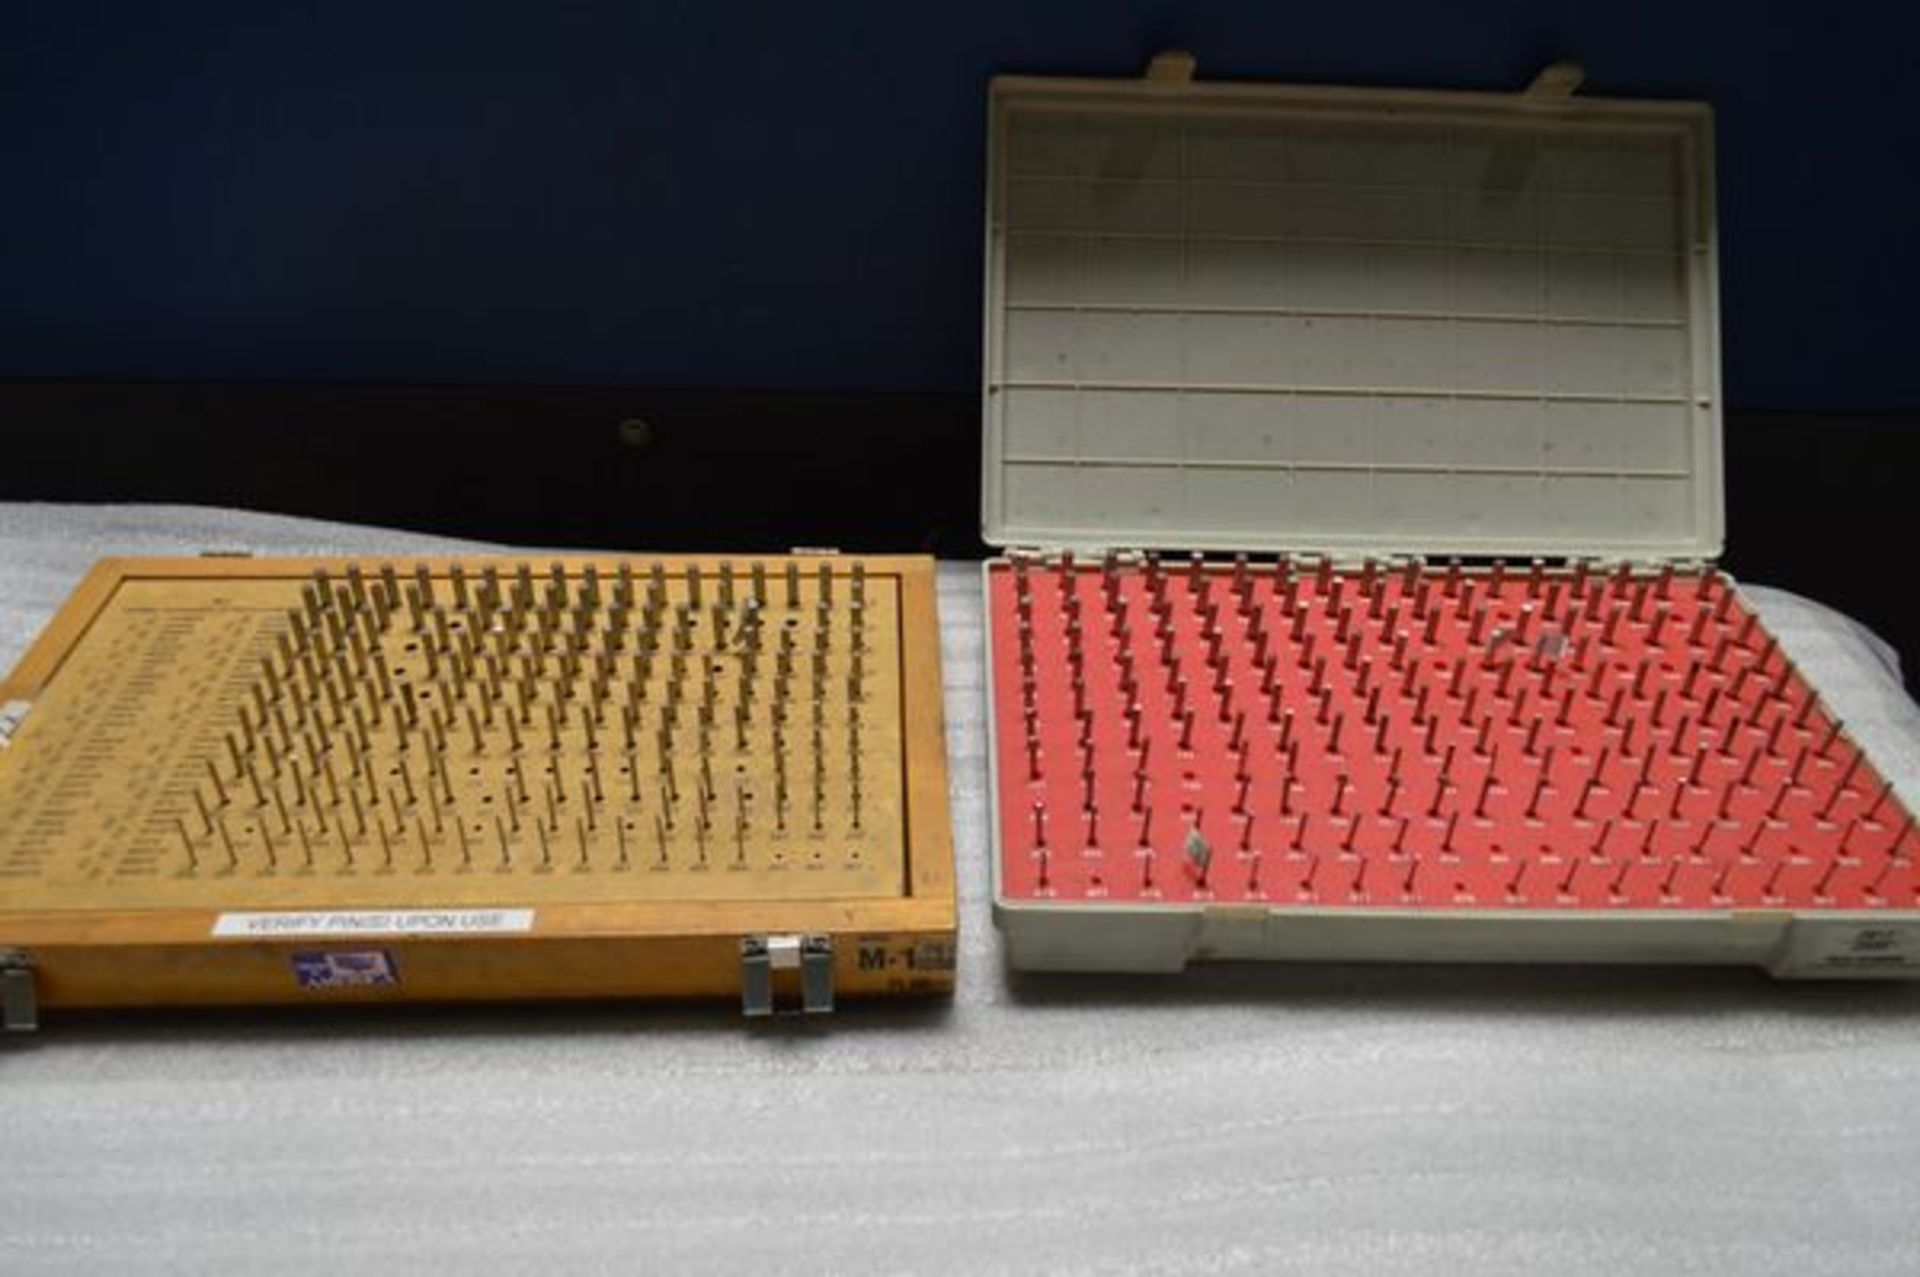 Meyer Pin Gage Set Model M-1 .061" - 250" (Plus) and Vermont Pin Gage Set .0610" - .2500" (Minus)